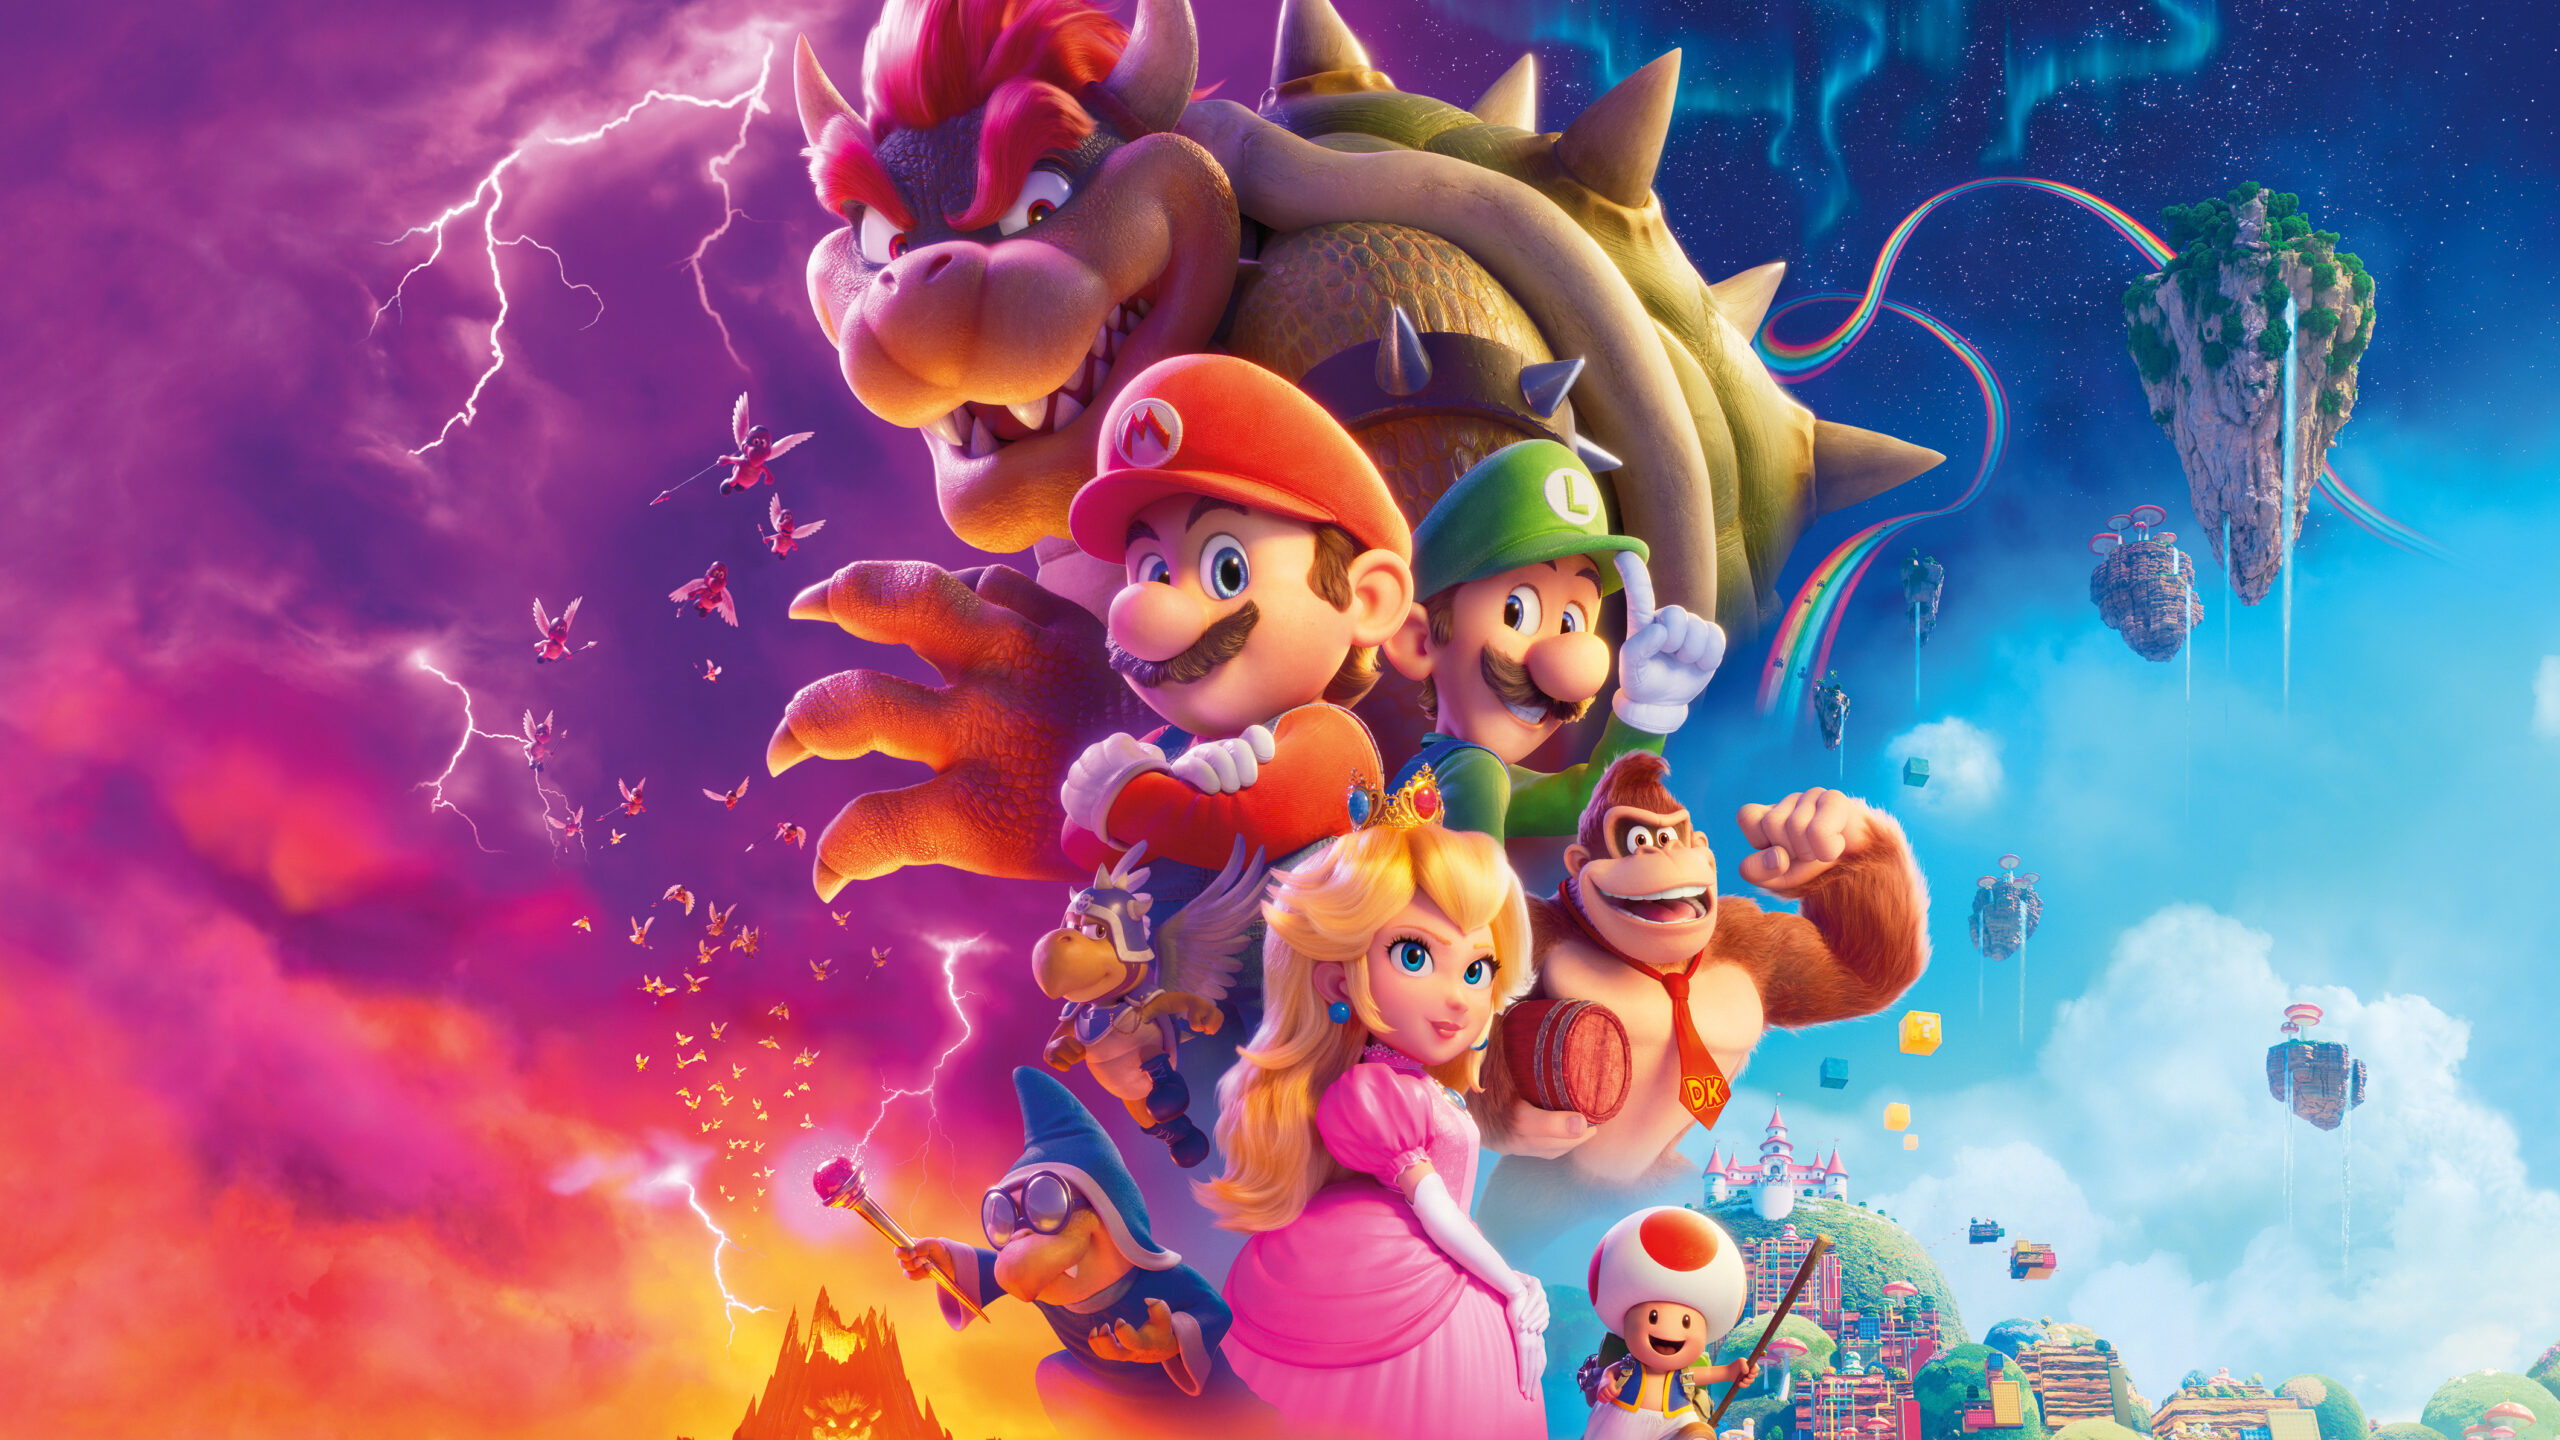 ‘Super Mario Bros. O Filme:’ A adaptação nostálgica do famoso game chega aos cinemas e reforça seu legado com as novas gerações